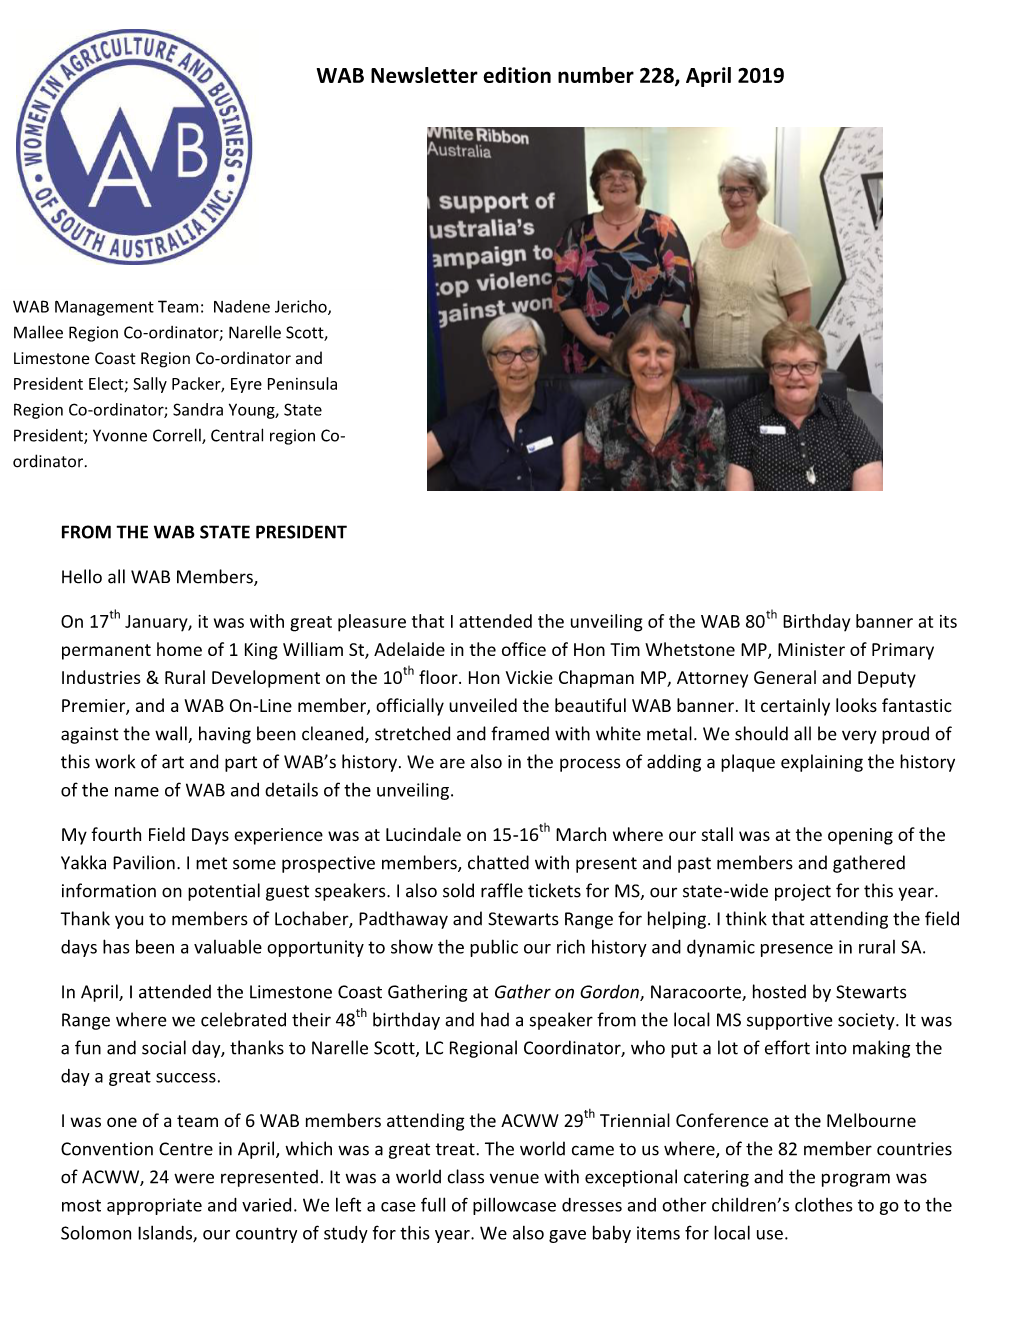 WAB Newsletter Edition Number 228, April 2019